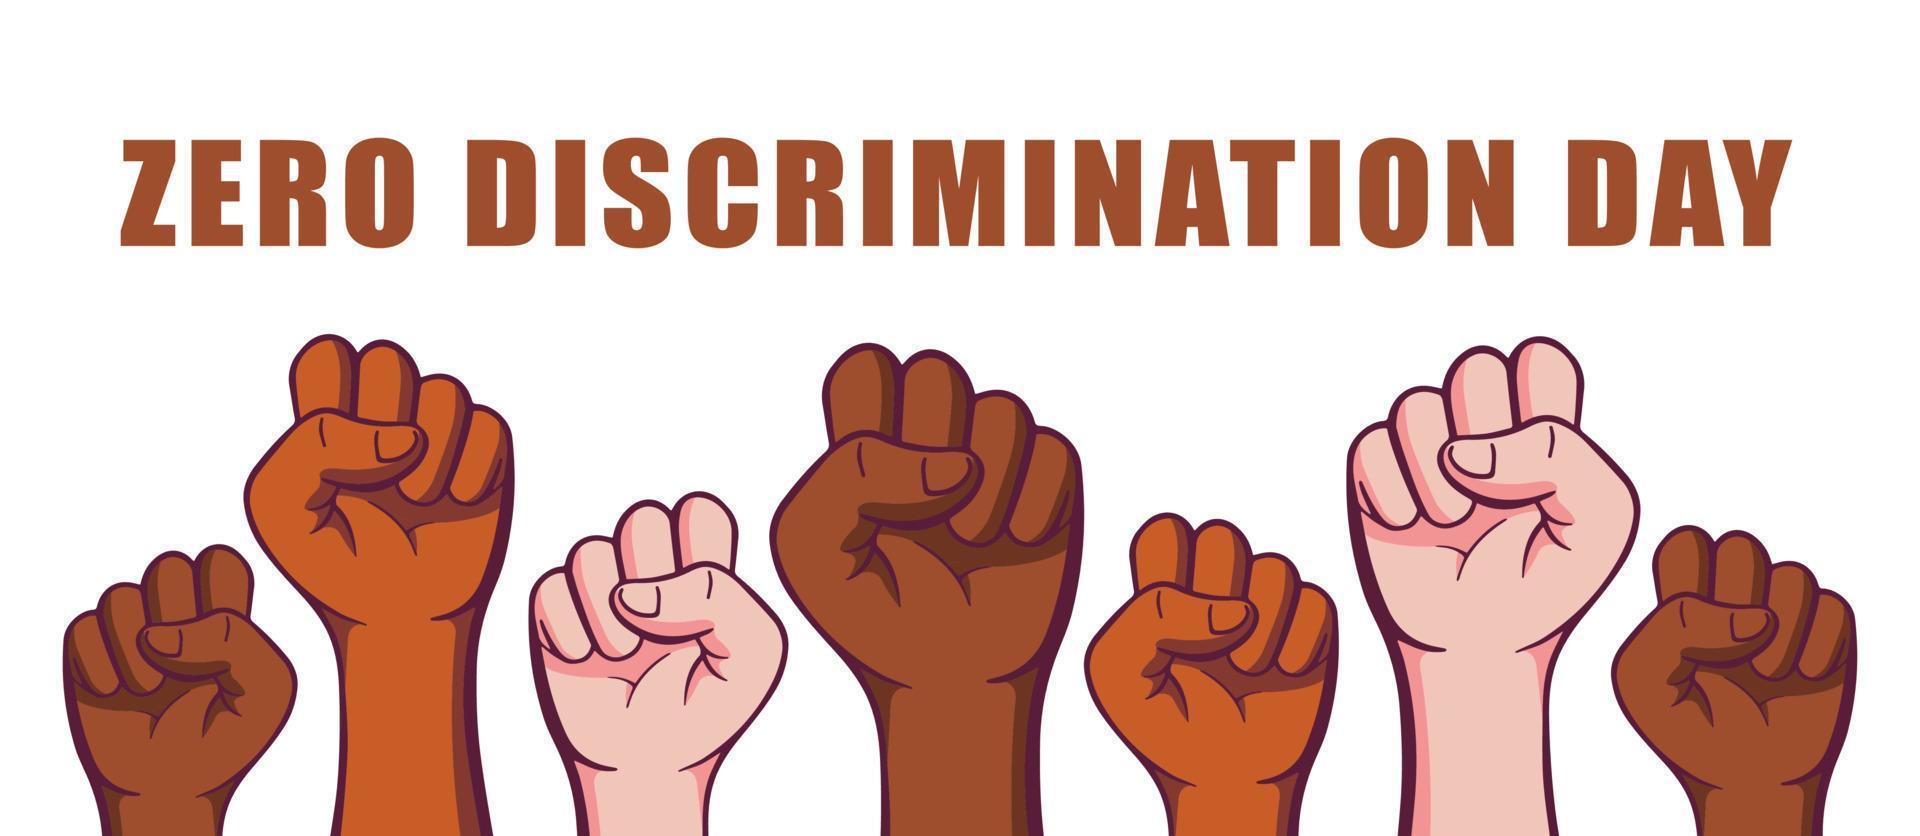 nul discriminatie dag 1 maart vector illustratie